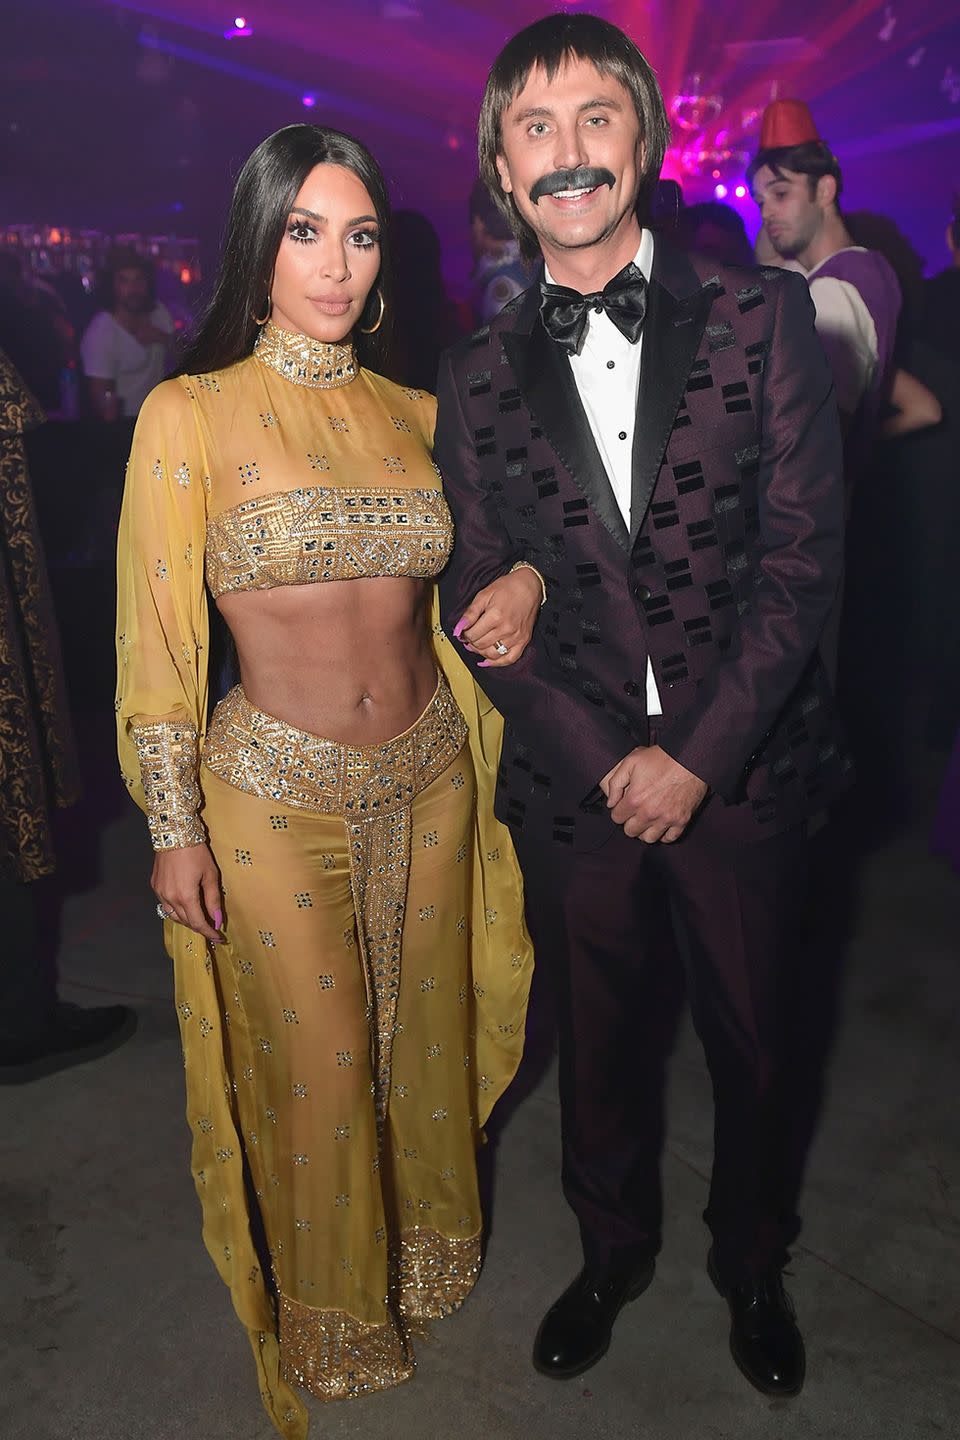 Kim Kardashian and Jonathan Cheban - Sunny and Cher